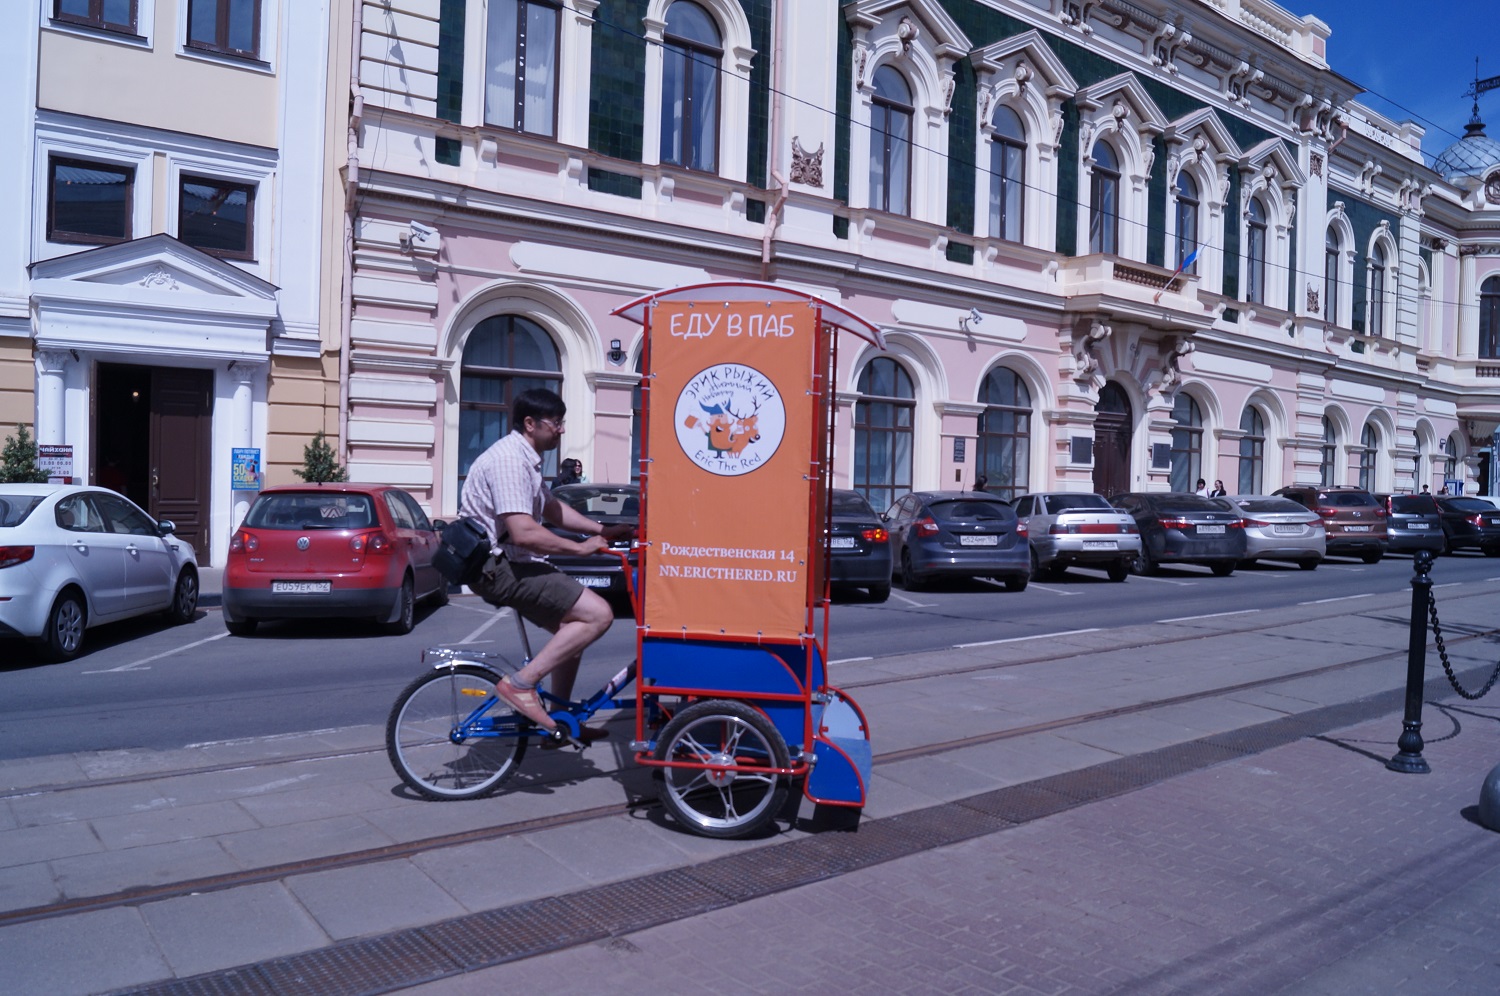 Велорикши и сухой борщ: новые развлечения в Нижнем Новгороде - фото 2